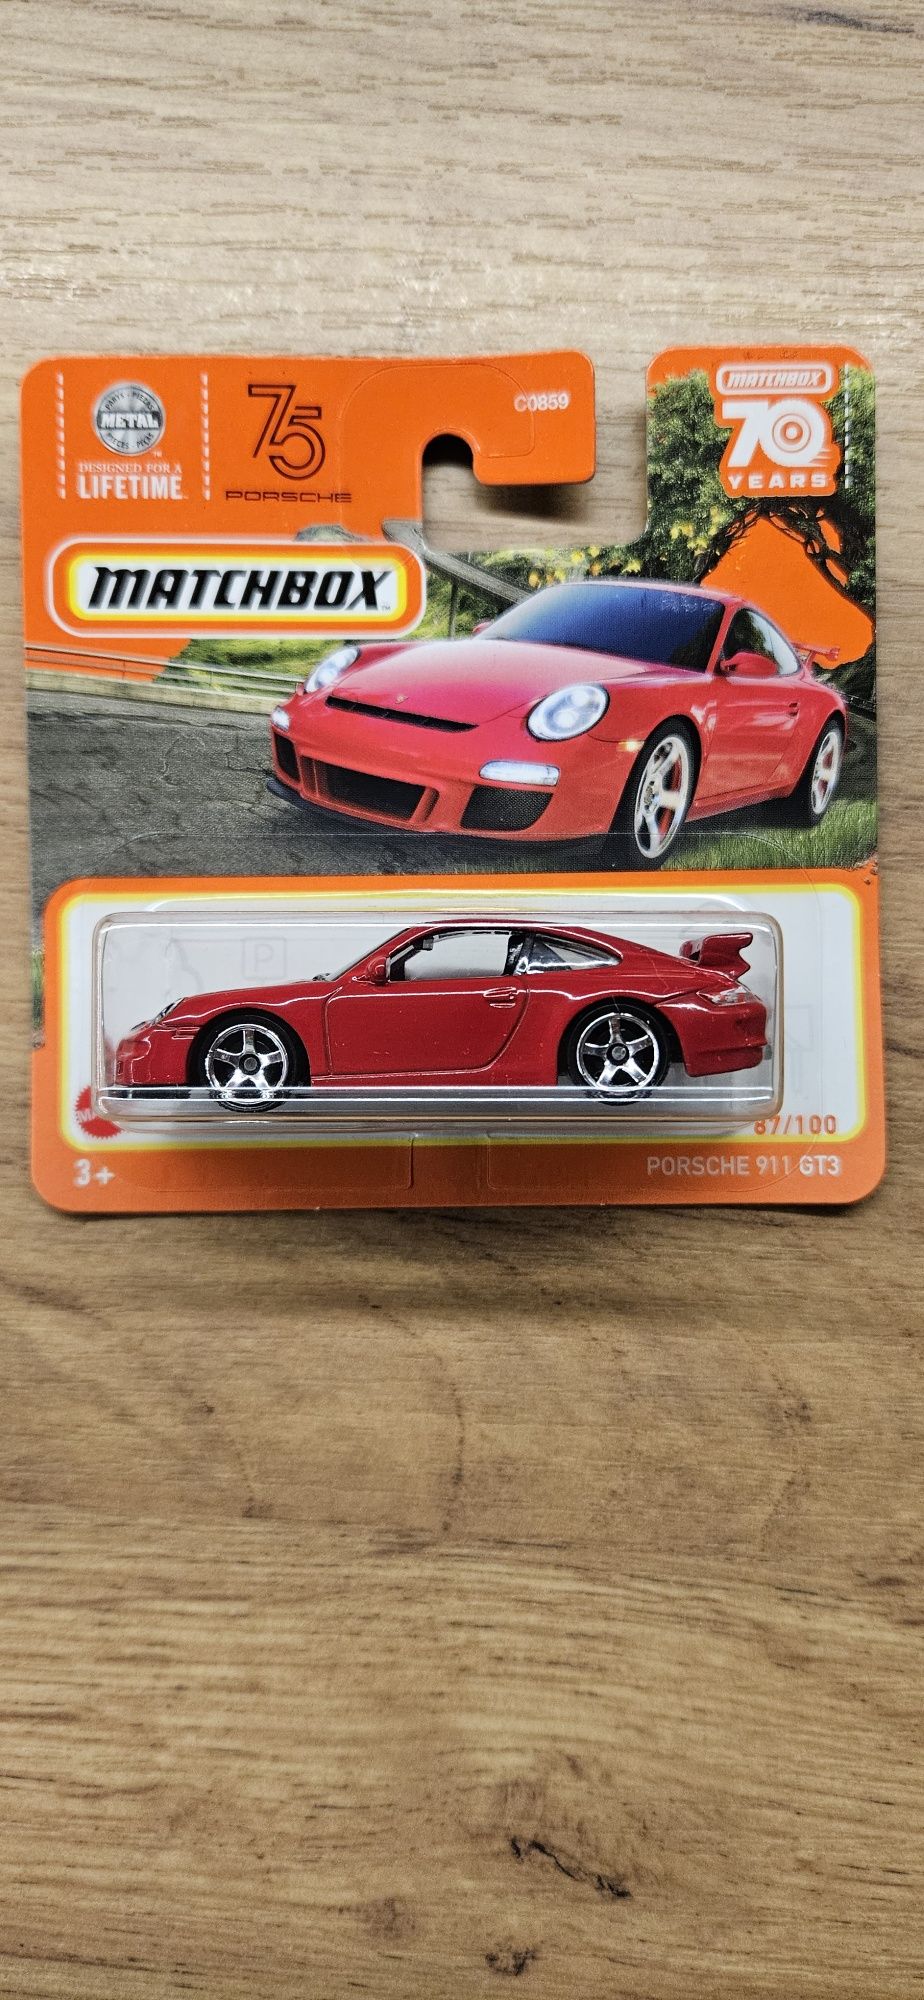 Matchbox VW Golf GTI MK1 + Porsche 911 GT3